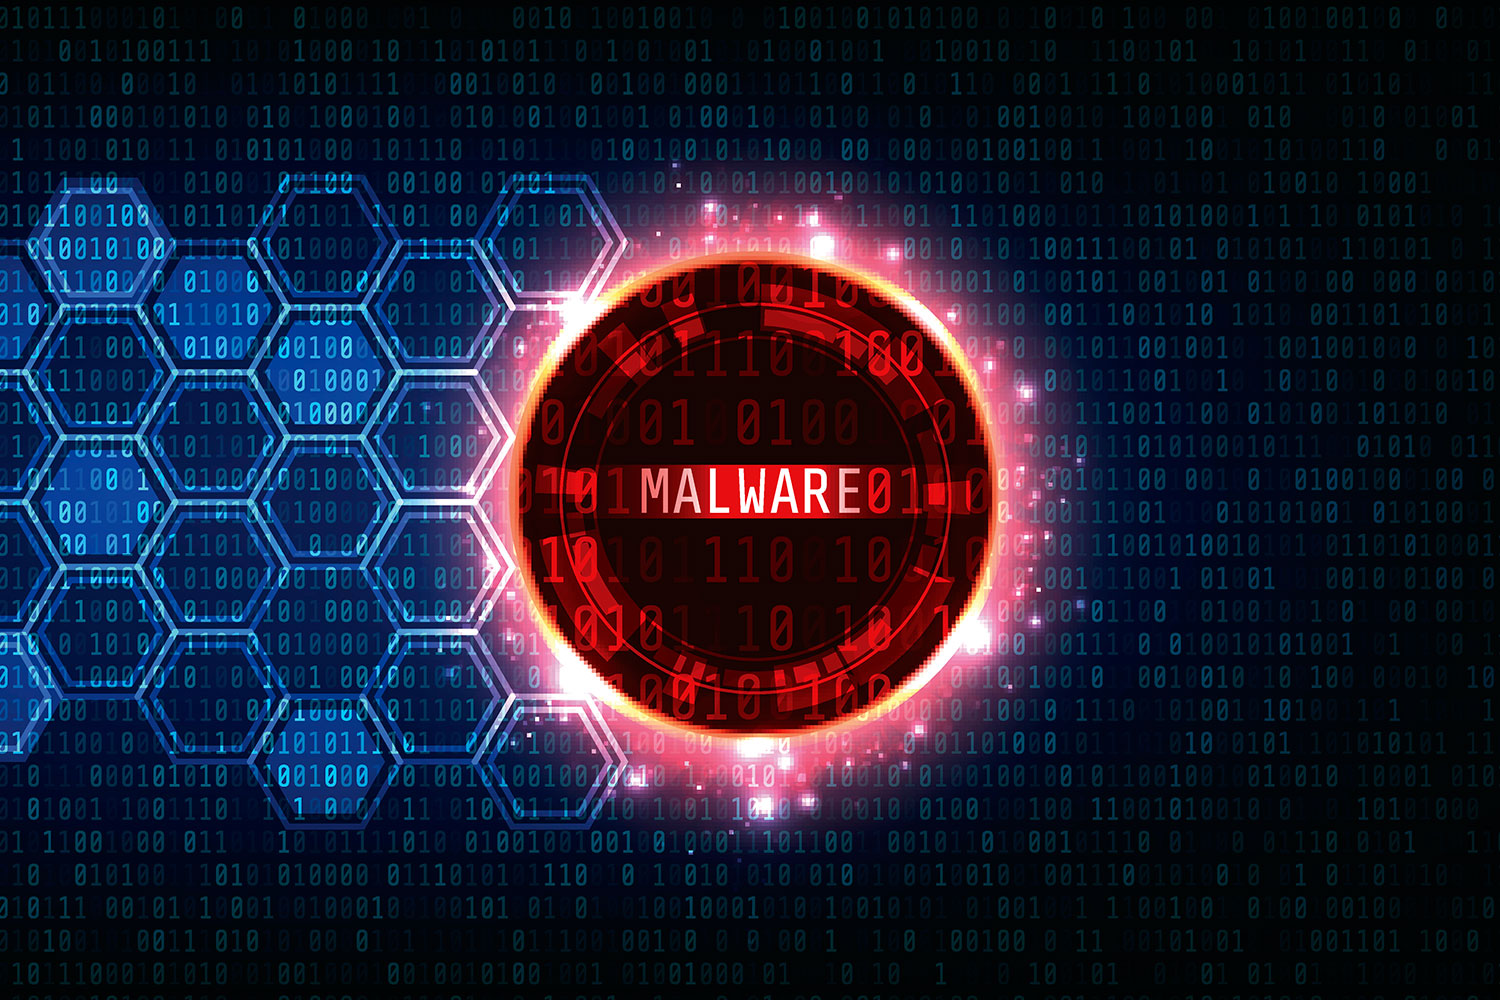 la palabra malware dentro de un círculo rojo